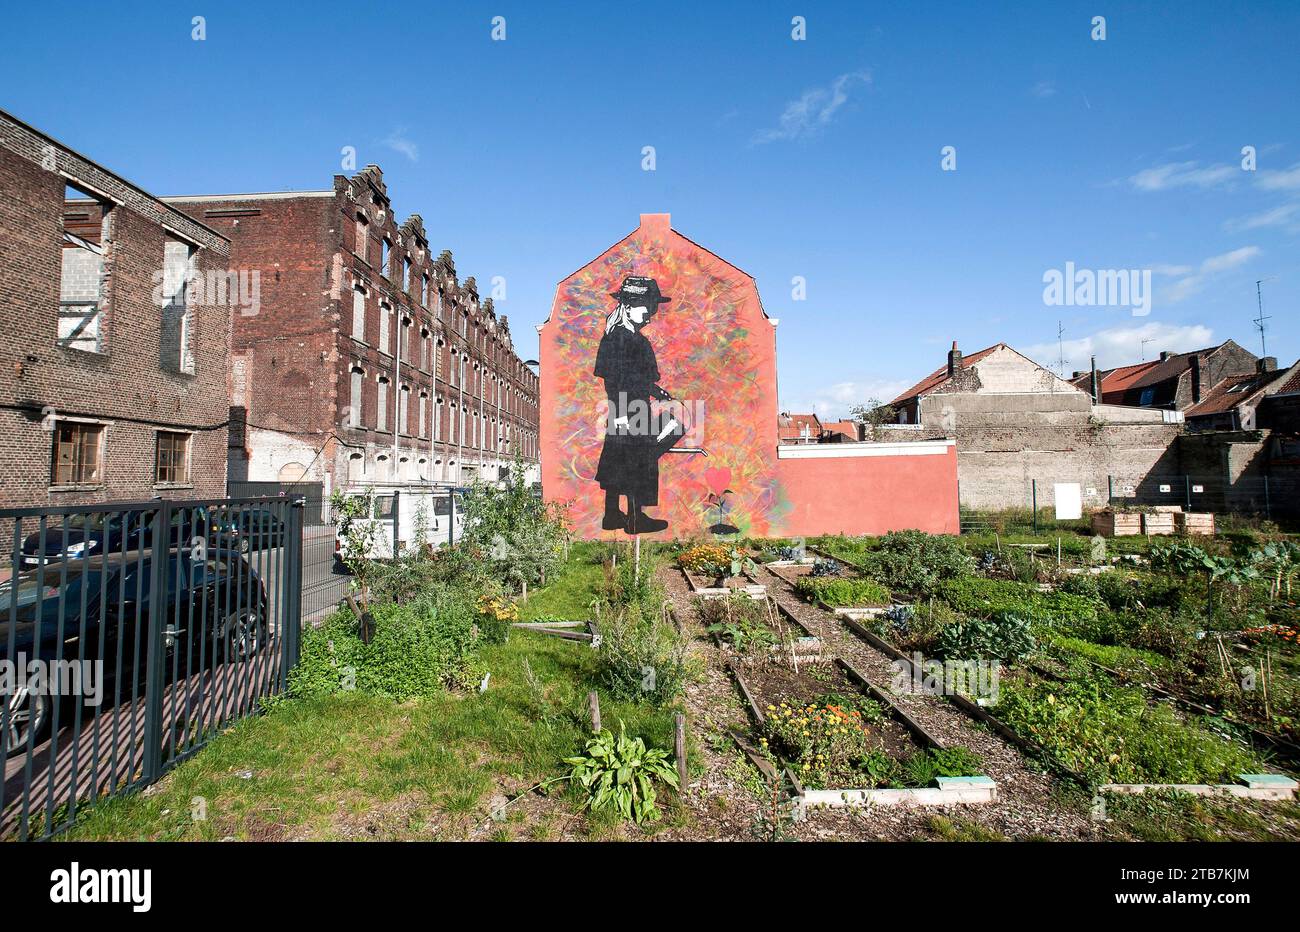 Roubaix (Nordfrankreich): Wandgemälde des Straßenkunstkünstlers Ted Nomad im Stadtteil Le Pile, kleines Mädchen mit einer Gießkanne und Gemeinschaftsgarten Stockfoto